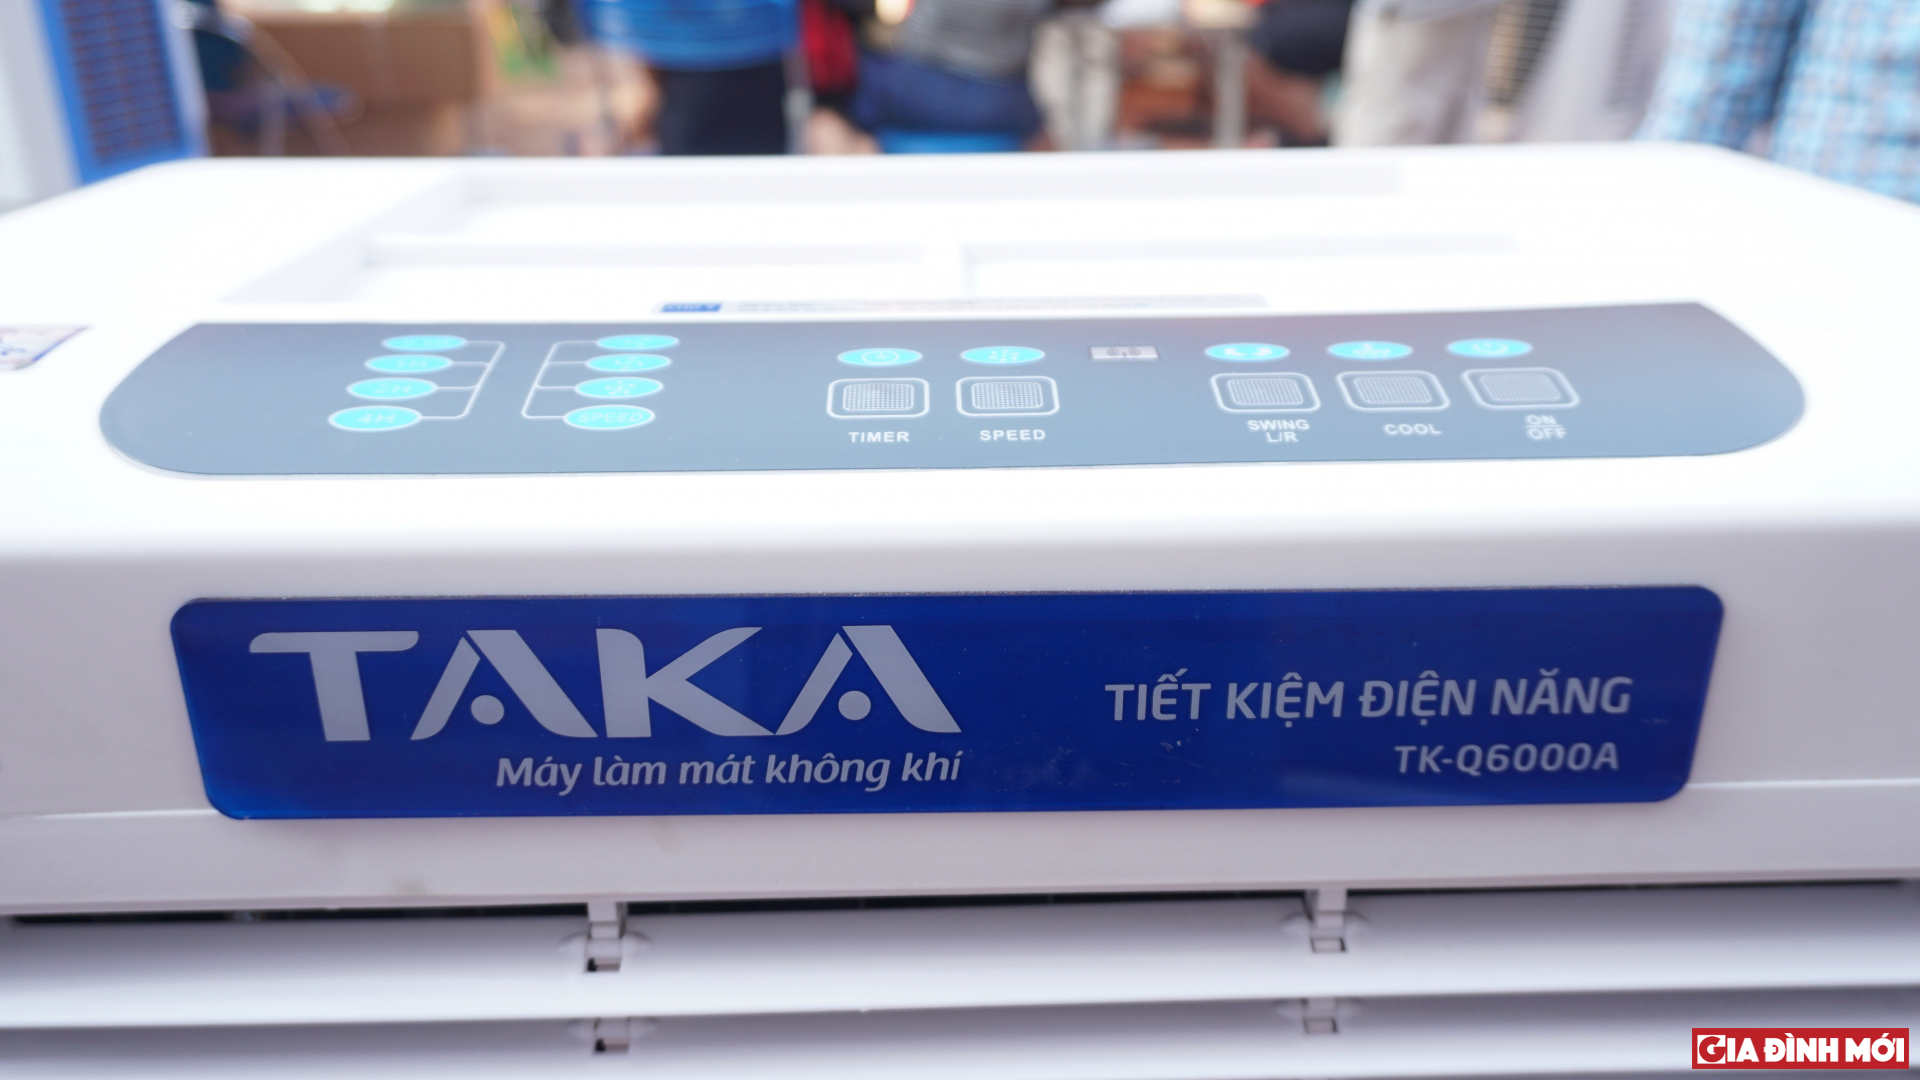 Đánh giá máy làm mát không khí Taka TK-Q6000A: Làm mát nhanh, siêu tiết kiệm điện, giá 5,5 triệu đồng 10